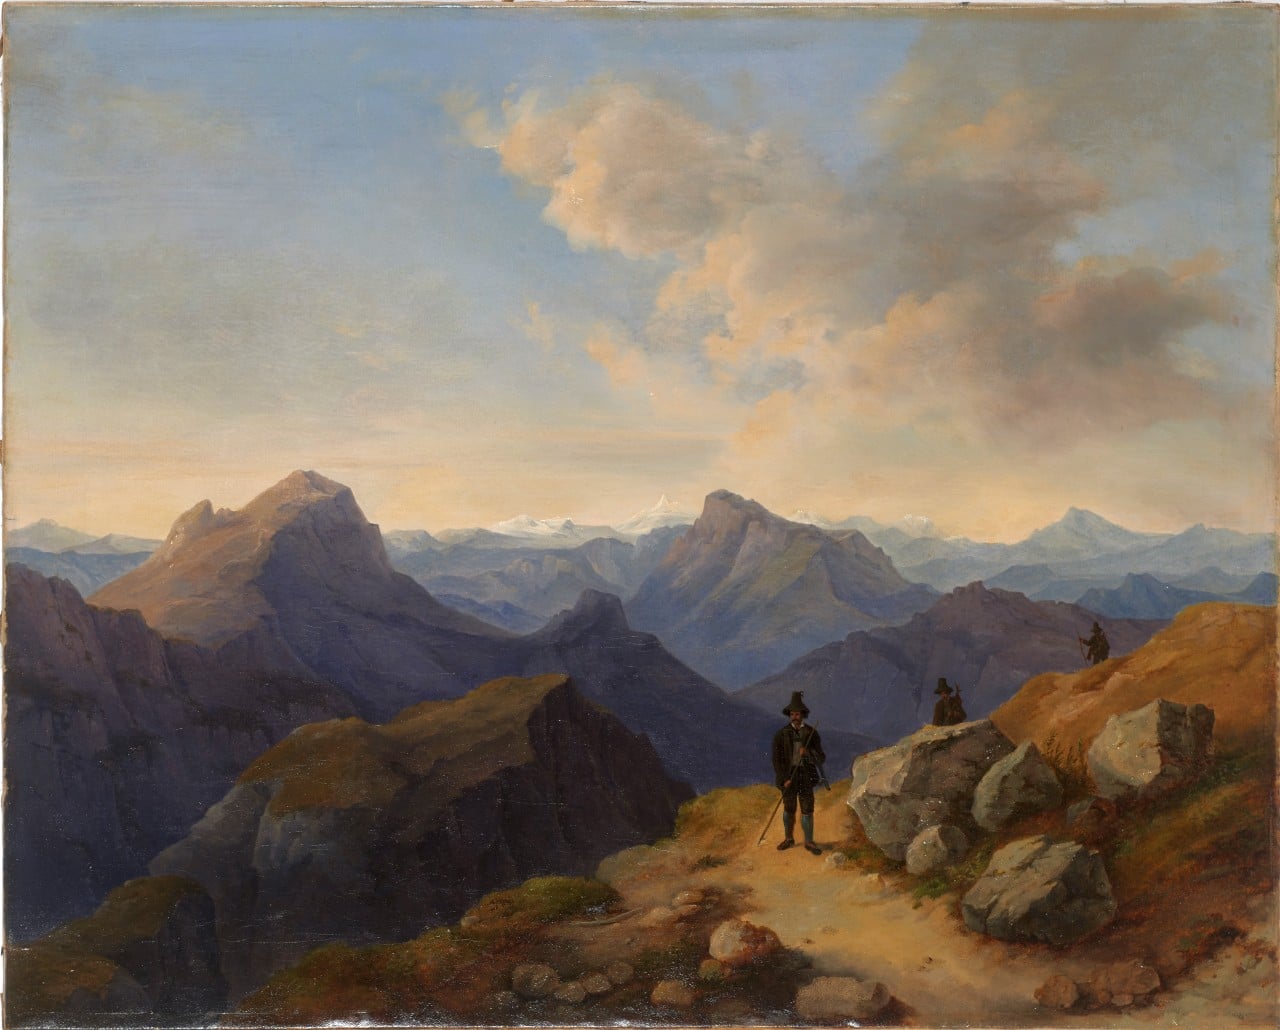 Markus Pernhart (1824-1871), Auf der Gamsjagd in den Alpen, oil on canvas, 64x79cm